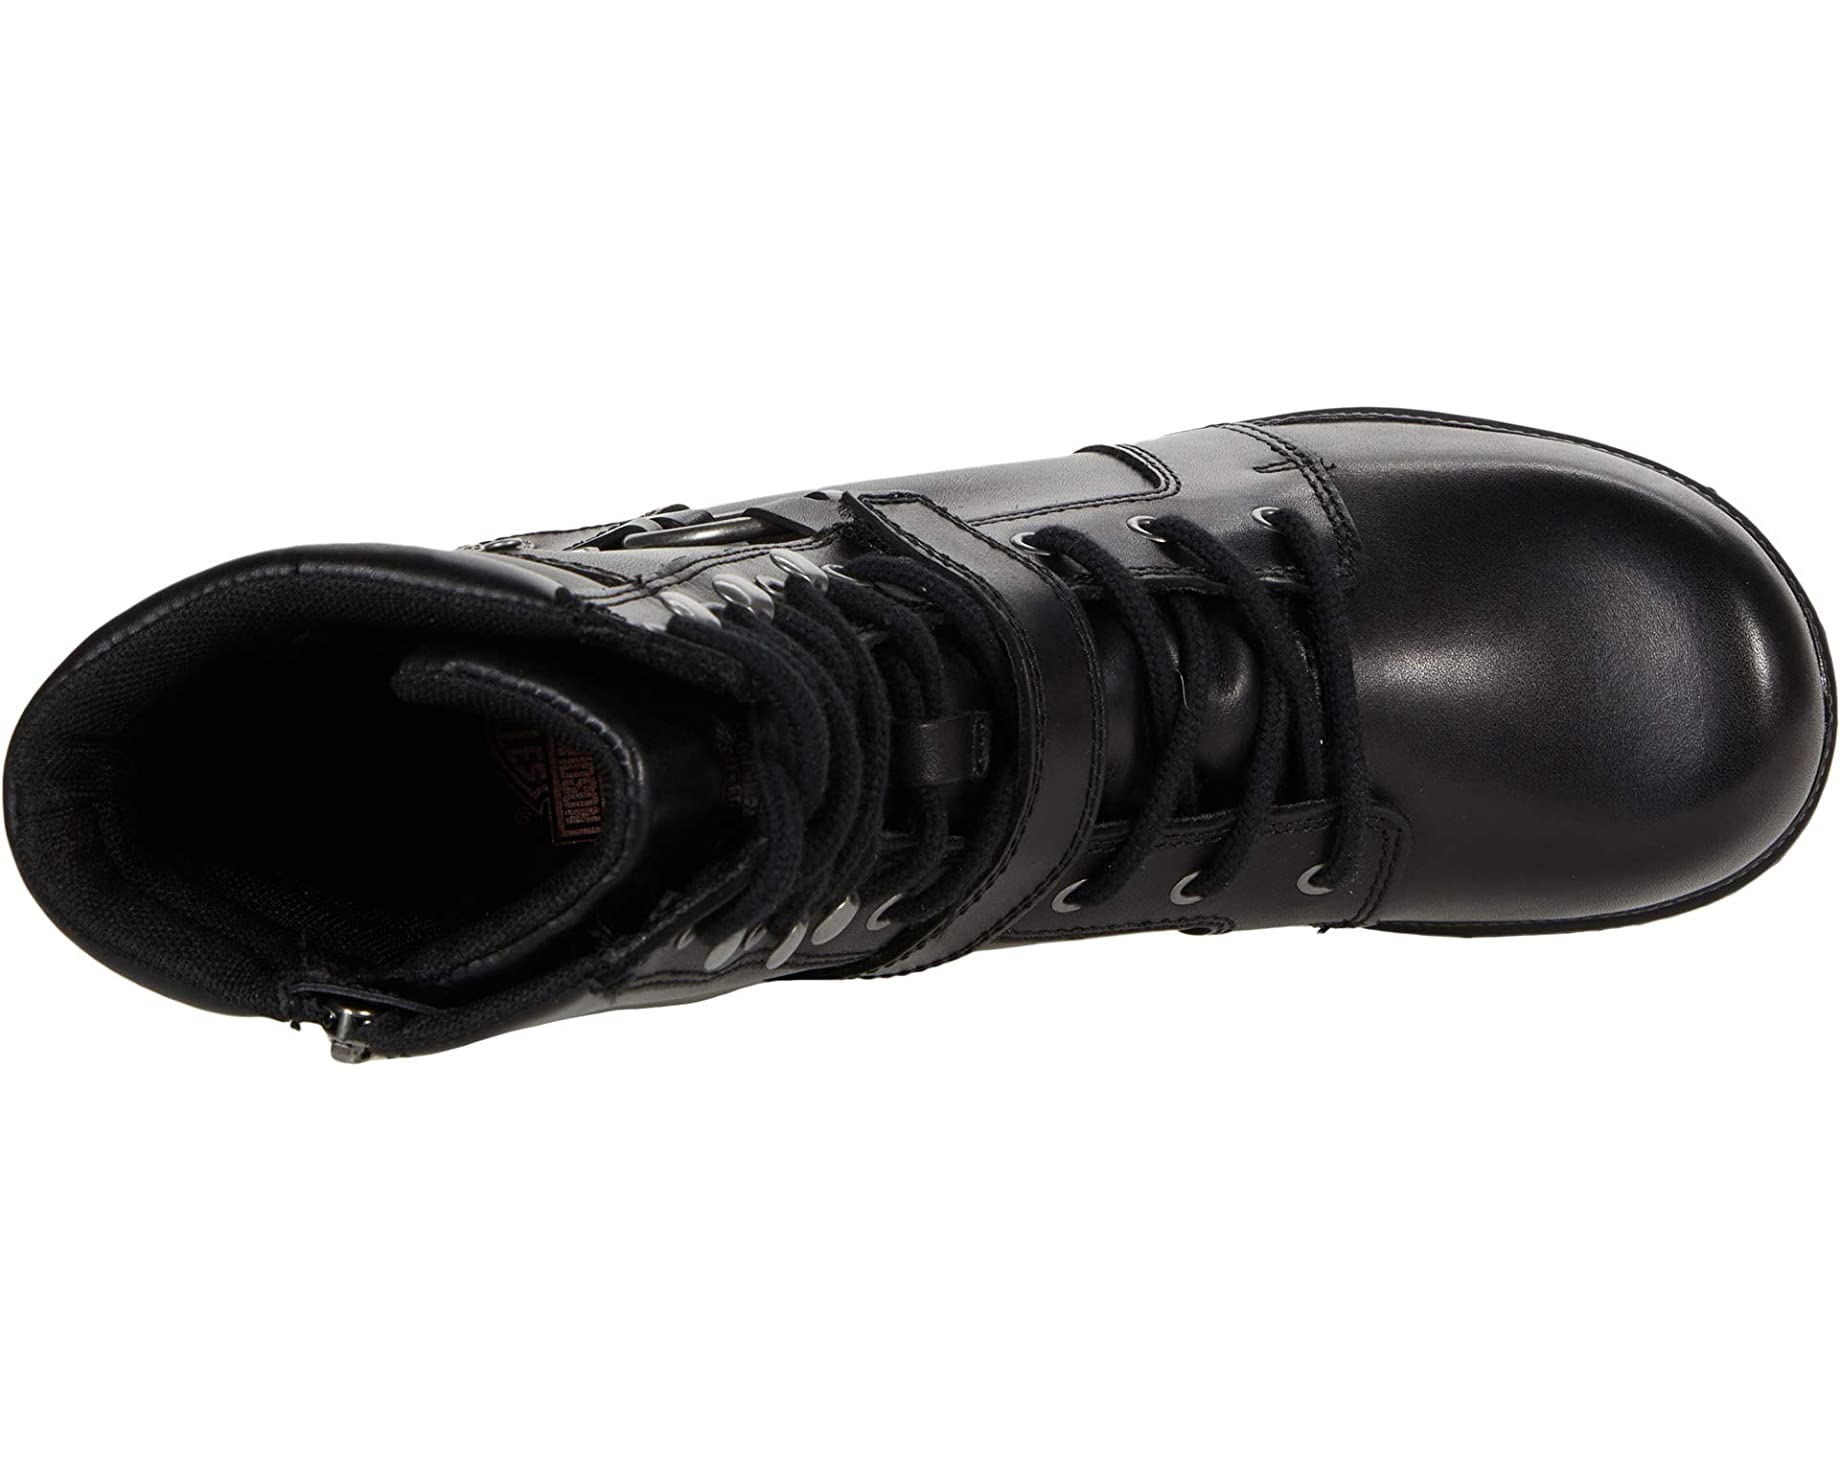 Ботинки Tegan 6 Harness Harley-Davidson, черный мужские ботинки битон harley davidson черный